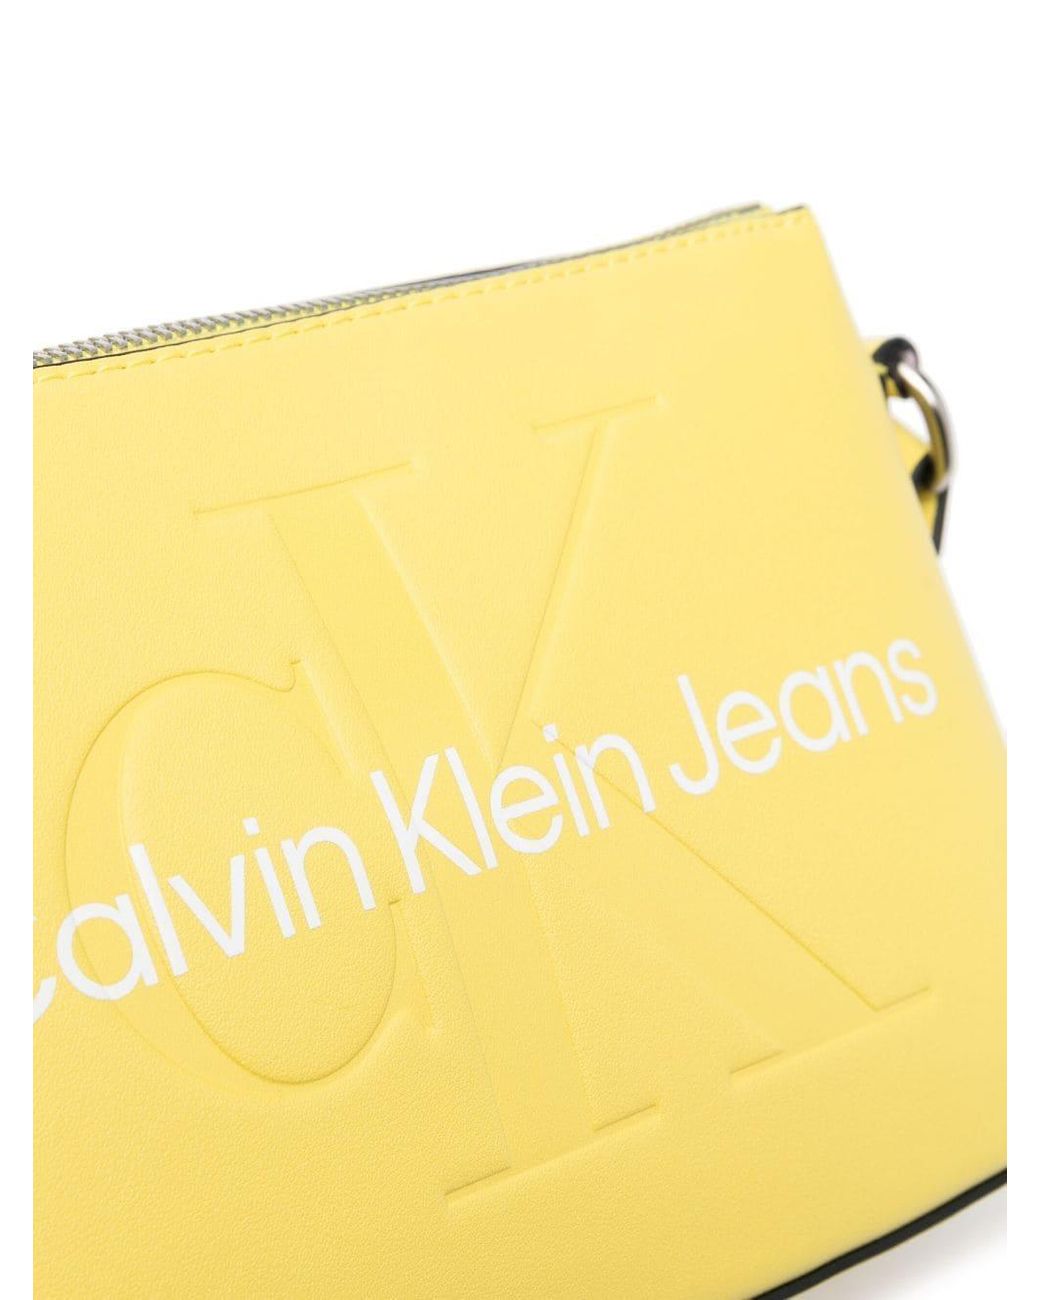 Calvin Klein Jeans faux leather monogram logo shoulder bag in black